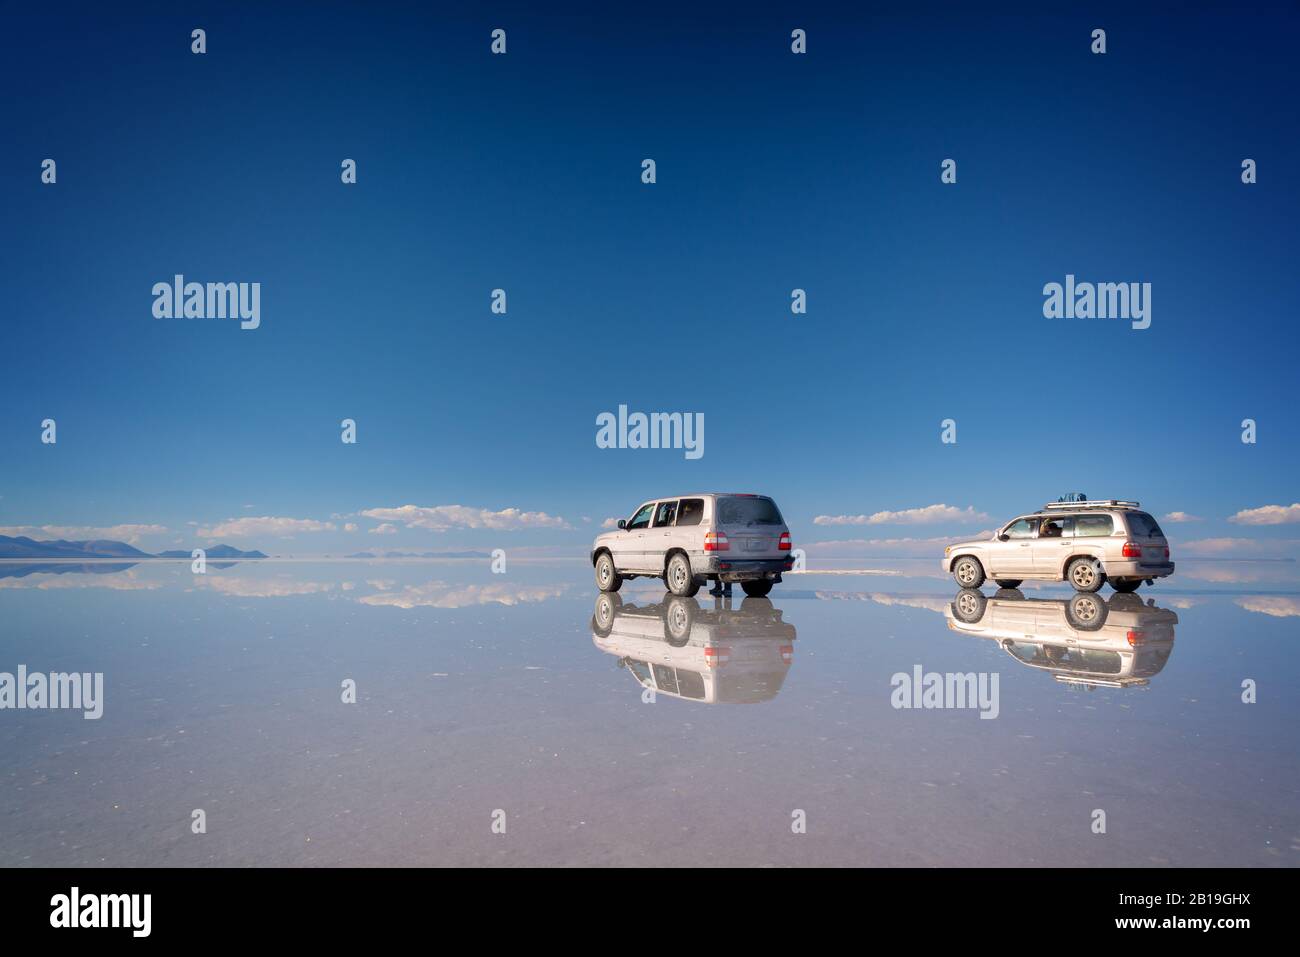 Effet miroir et réflexions de 4 x 4 voitures à Salar de Uyuni (Uyuni salin appartements), Potosi, Bolivie, Amérique du Sud Banque D'Images